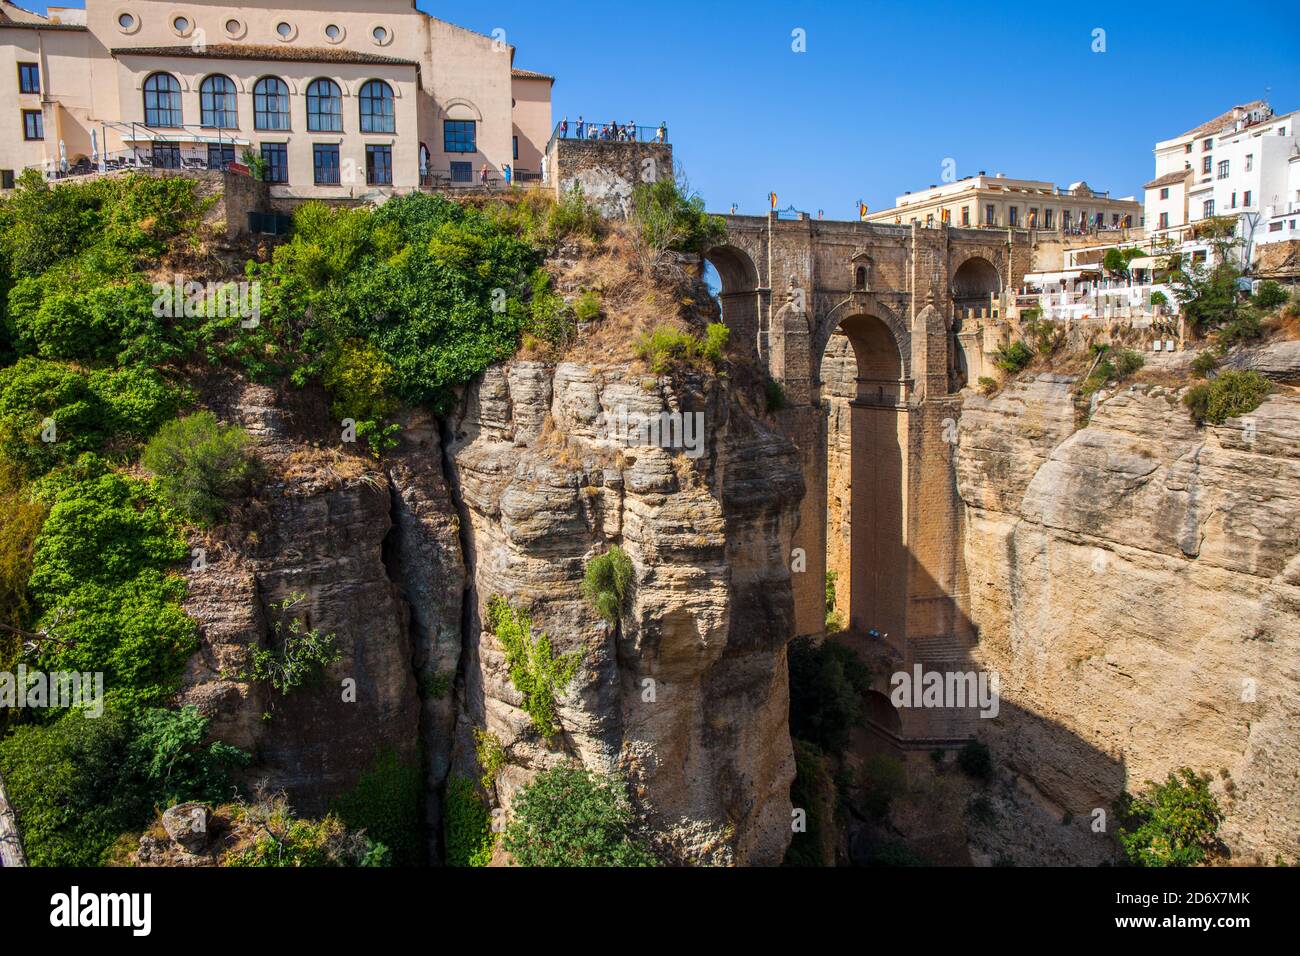 Vieux pont de pierre à Ronda près de Malaga, Andalousie, Espagne. Photo prise – 23 septembre 2020. Banque D'Images